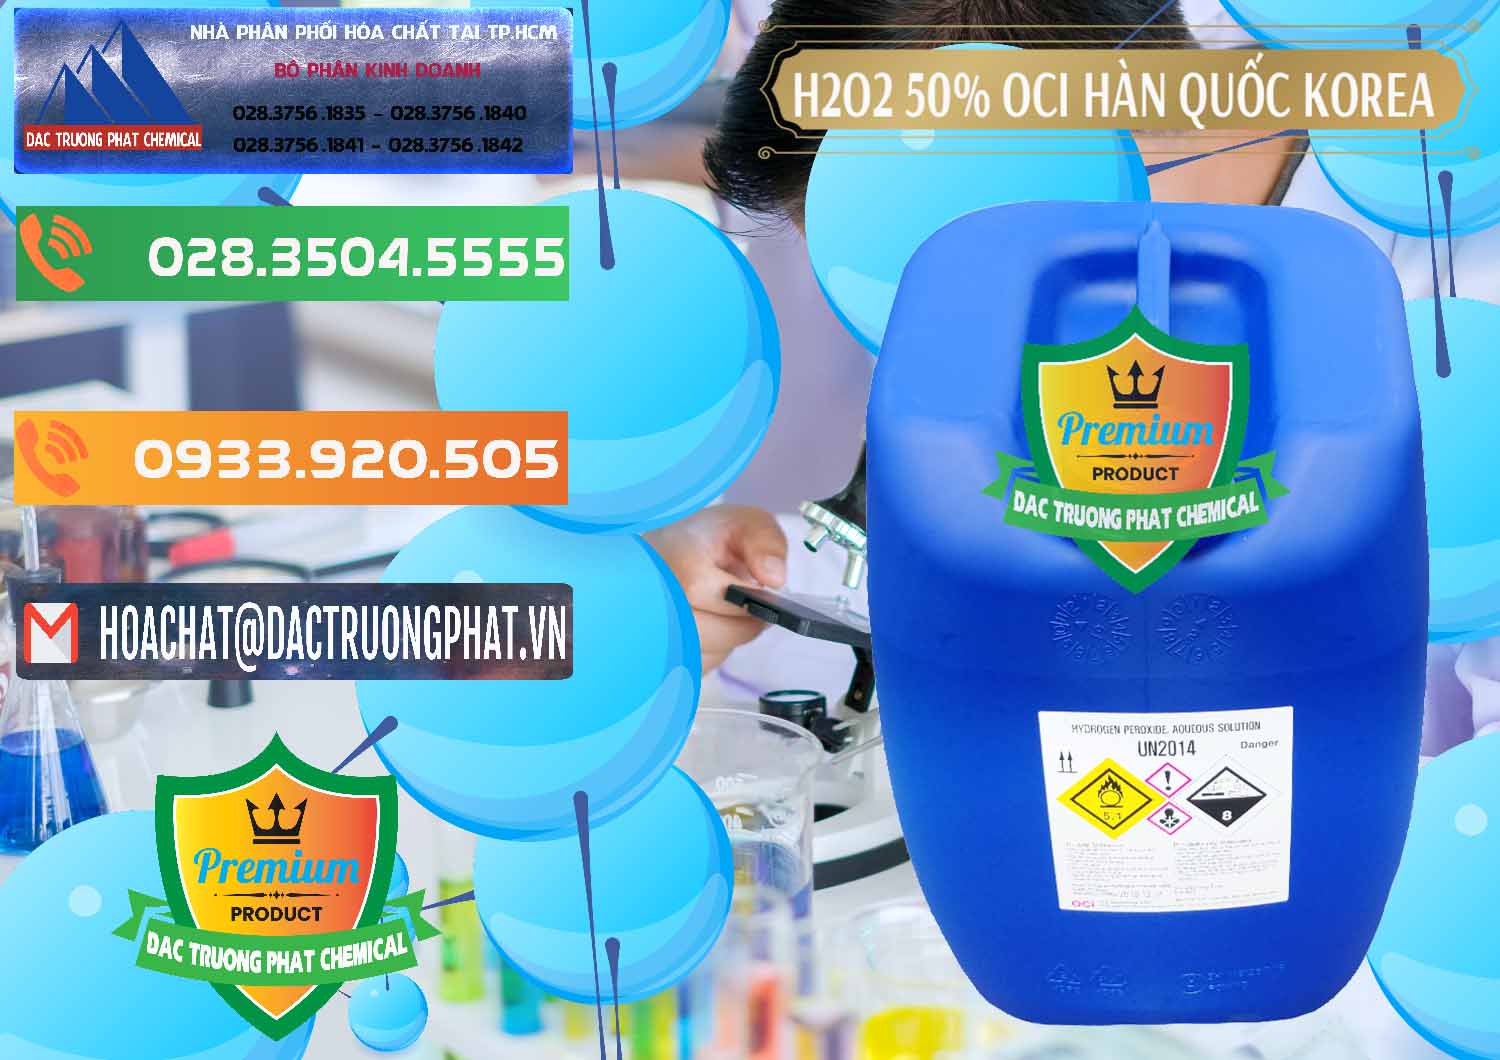 Cty bán và cung cấp H2O2 - Hydrogen Peroxide 50% OCI Hàn Quốc Korea - 0075 - Nơi cung cấp _ phân phối hóa chất tại TP.HCM - hoachatxulynuoc.com.vn